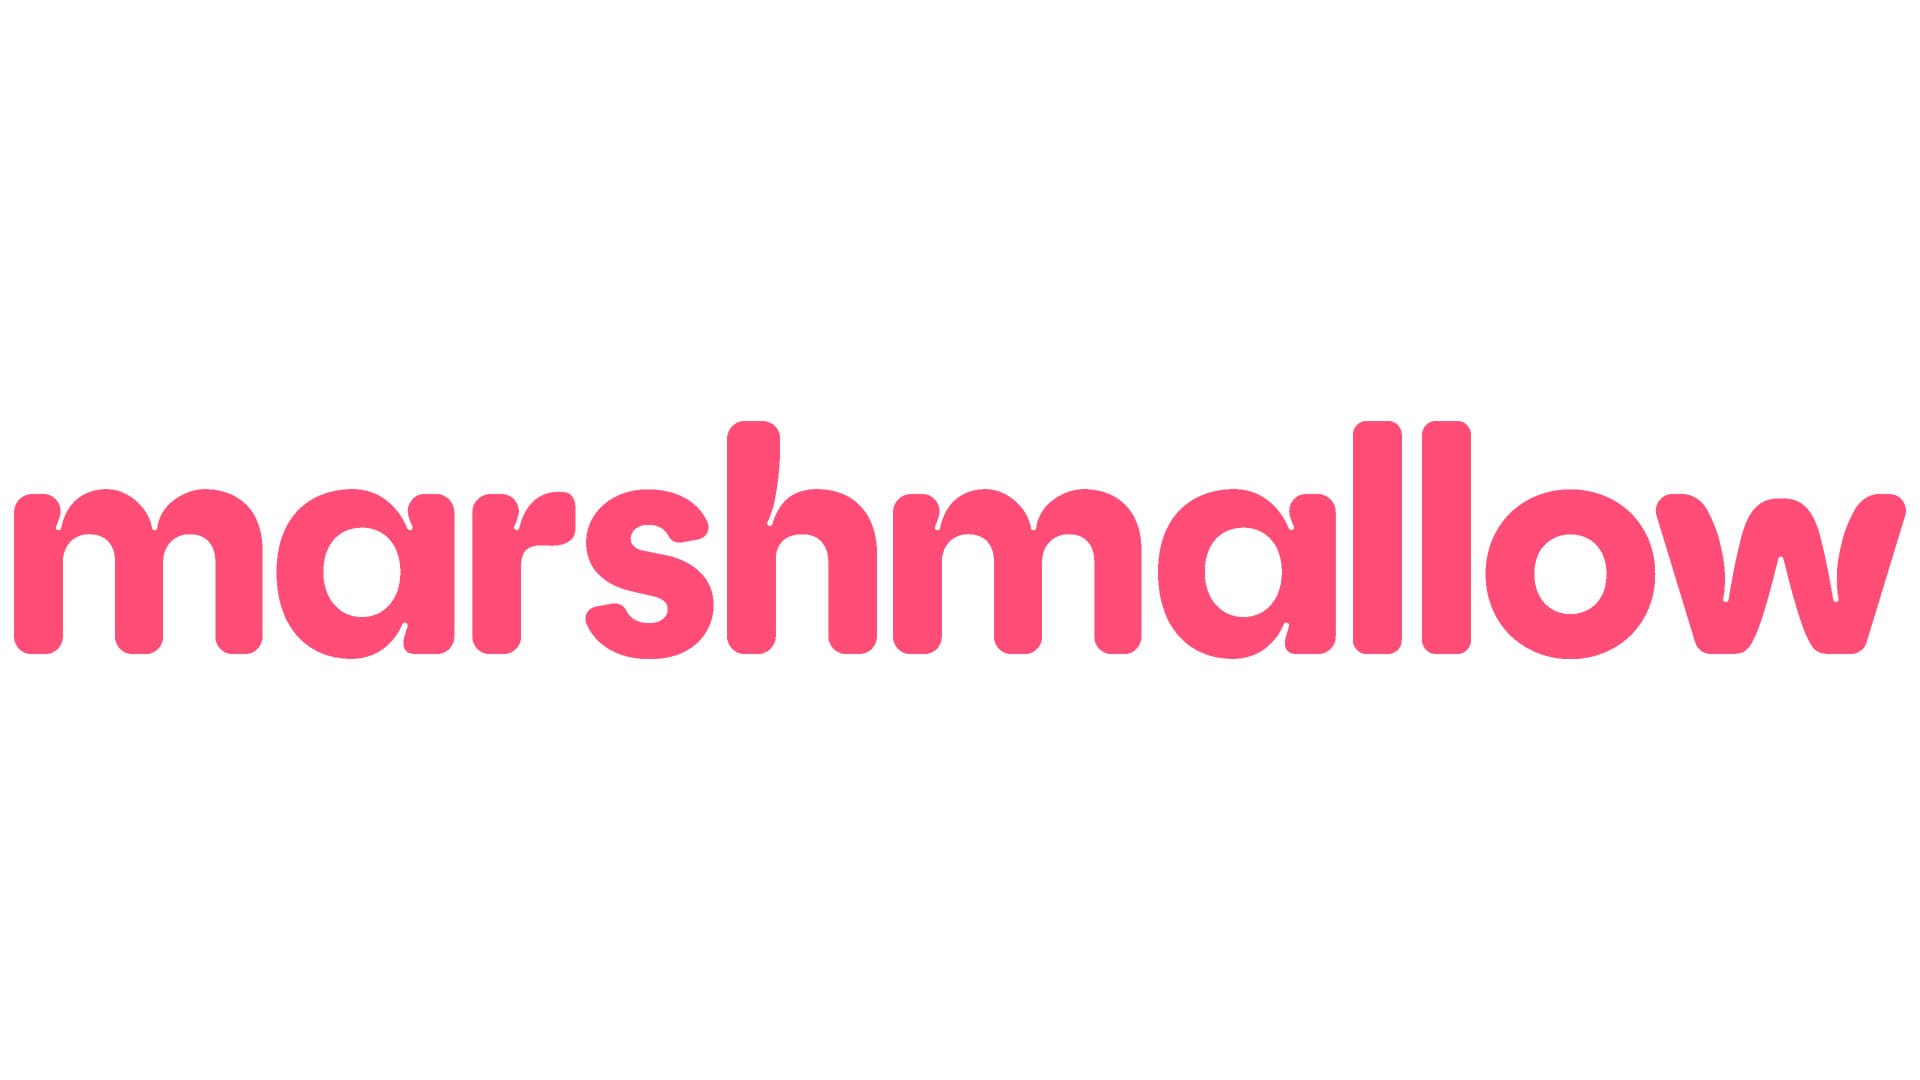 Marshmallow partage les résultats du rebranding : histoire, signification de l'emblème